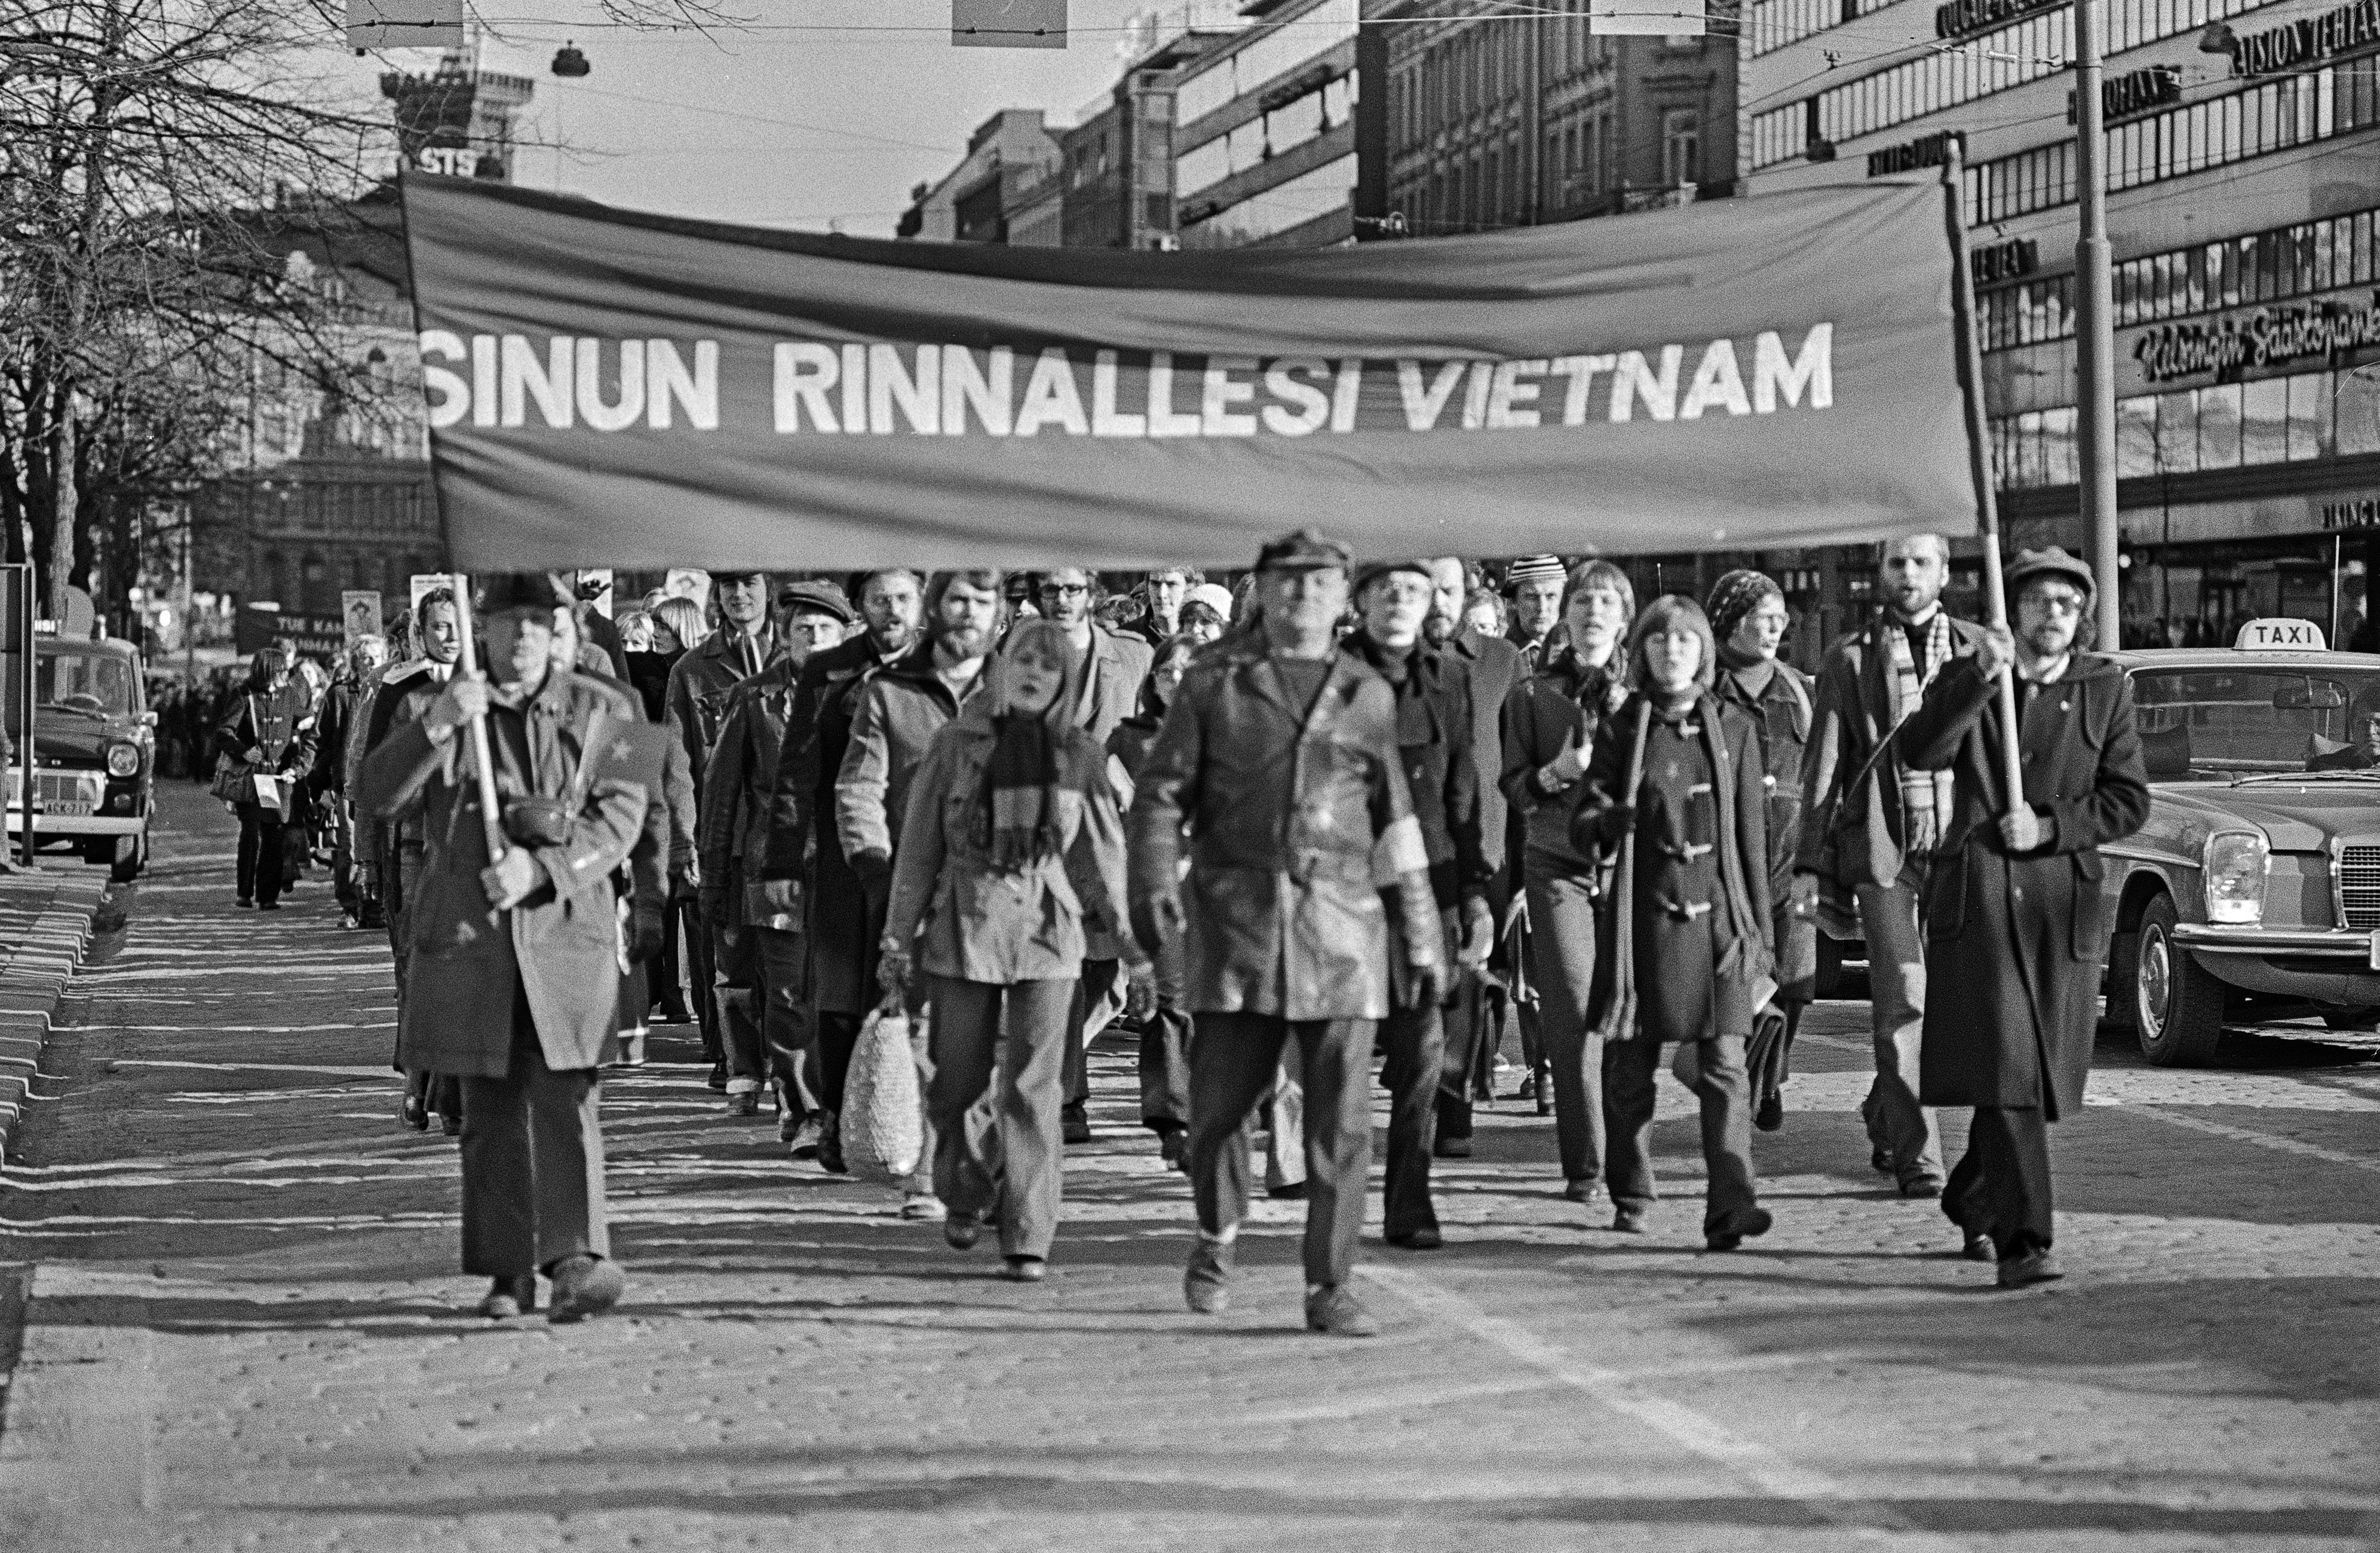 Mielenosoittajia marssimassa ajoradalla Mannerheimintiellä. Mielenosoittajat kantavat banderollia, jossa teksti: Sinun rinnallesi Vietnam. Vasemman puoleisella banderollin kantajalla on mukanaan Vietanamin sosialistisen tasavallan pienoislippu.